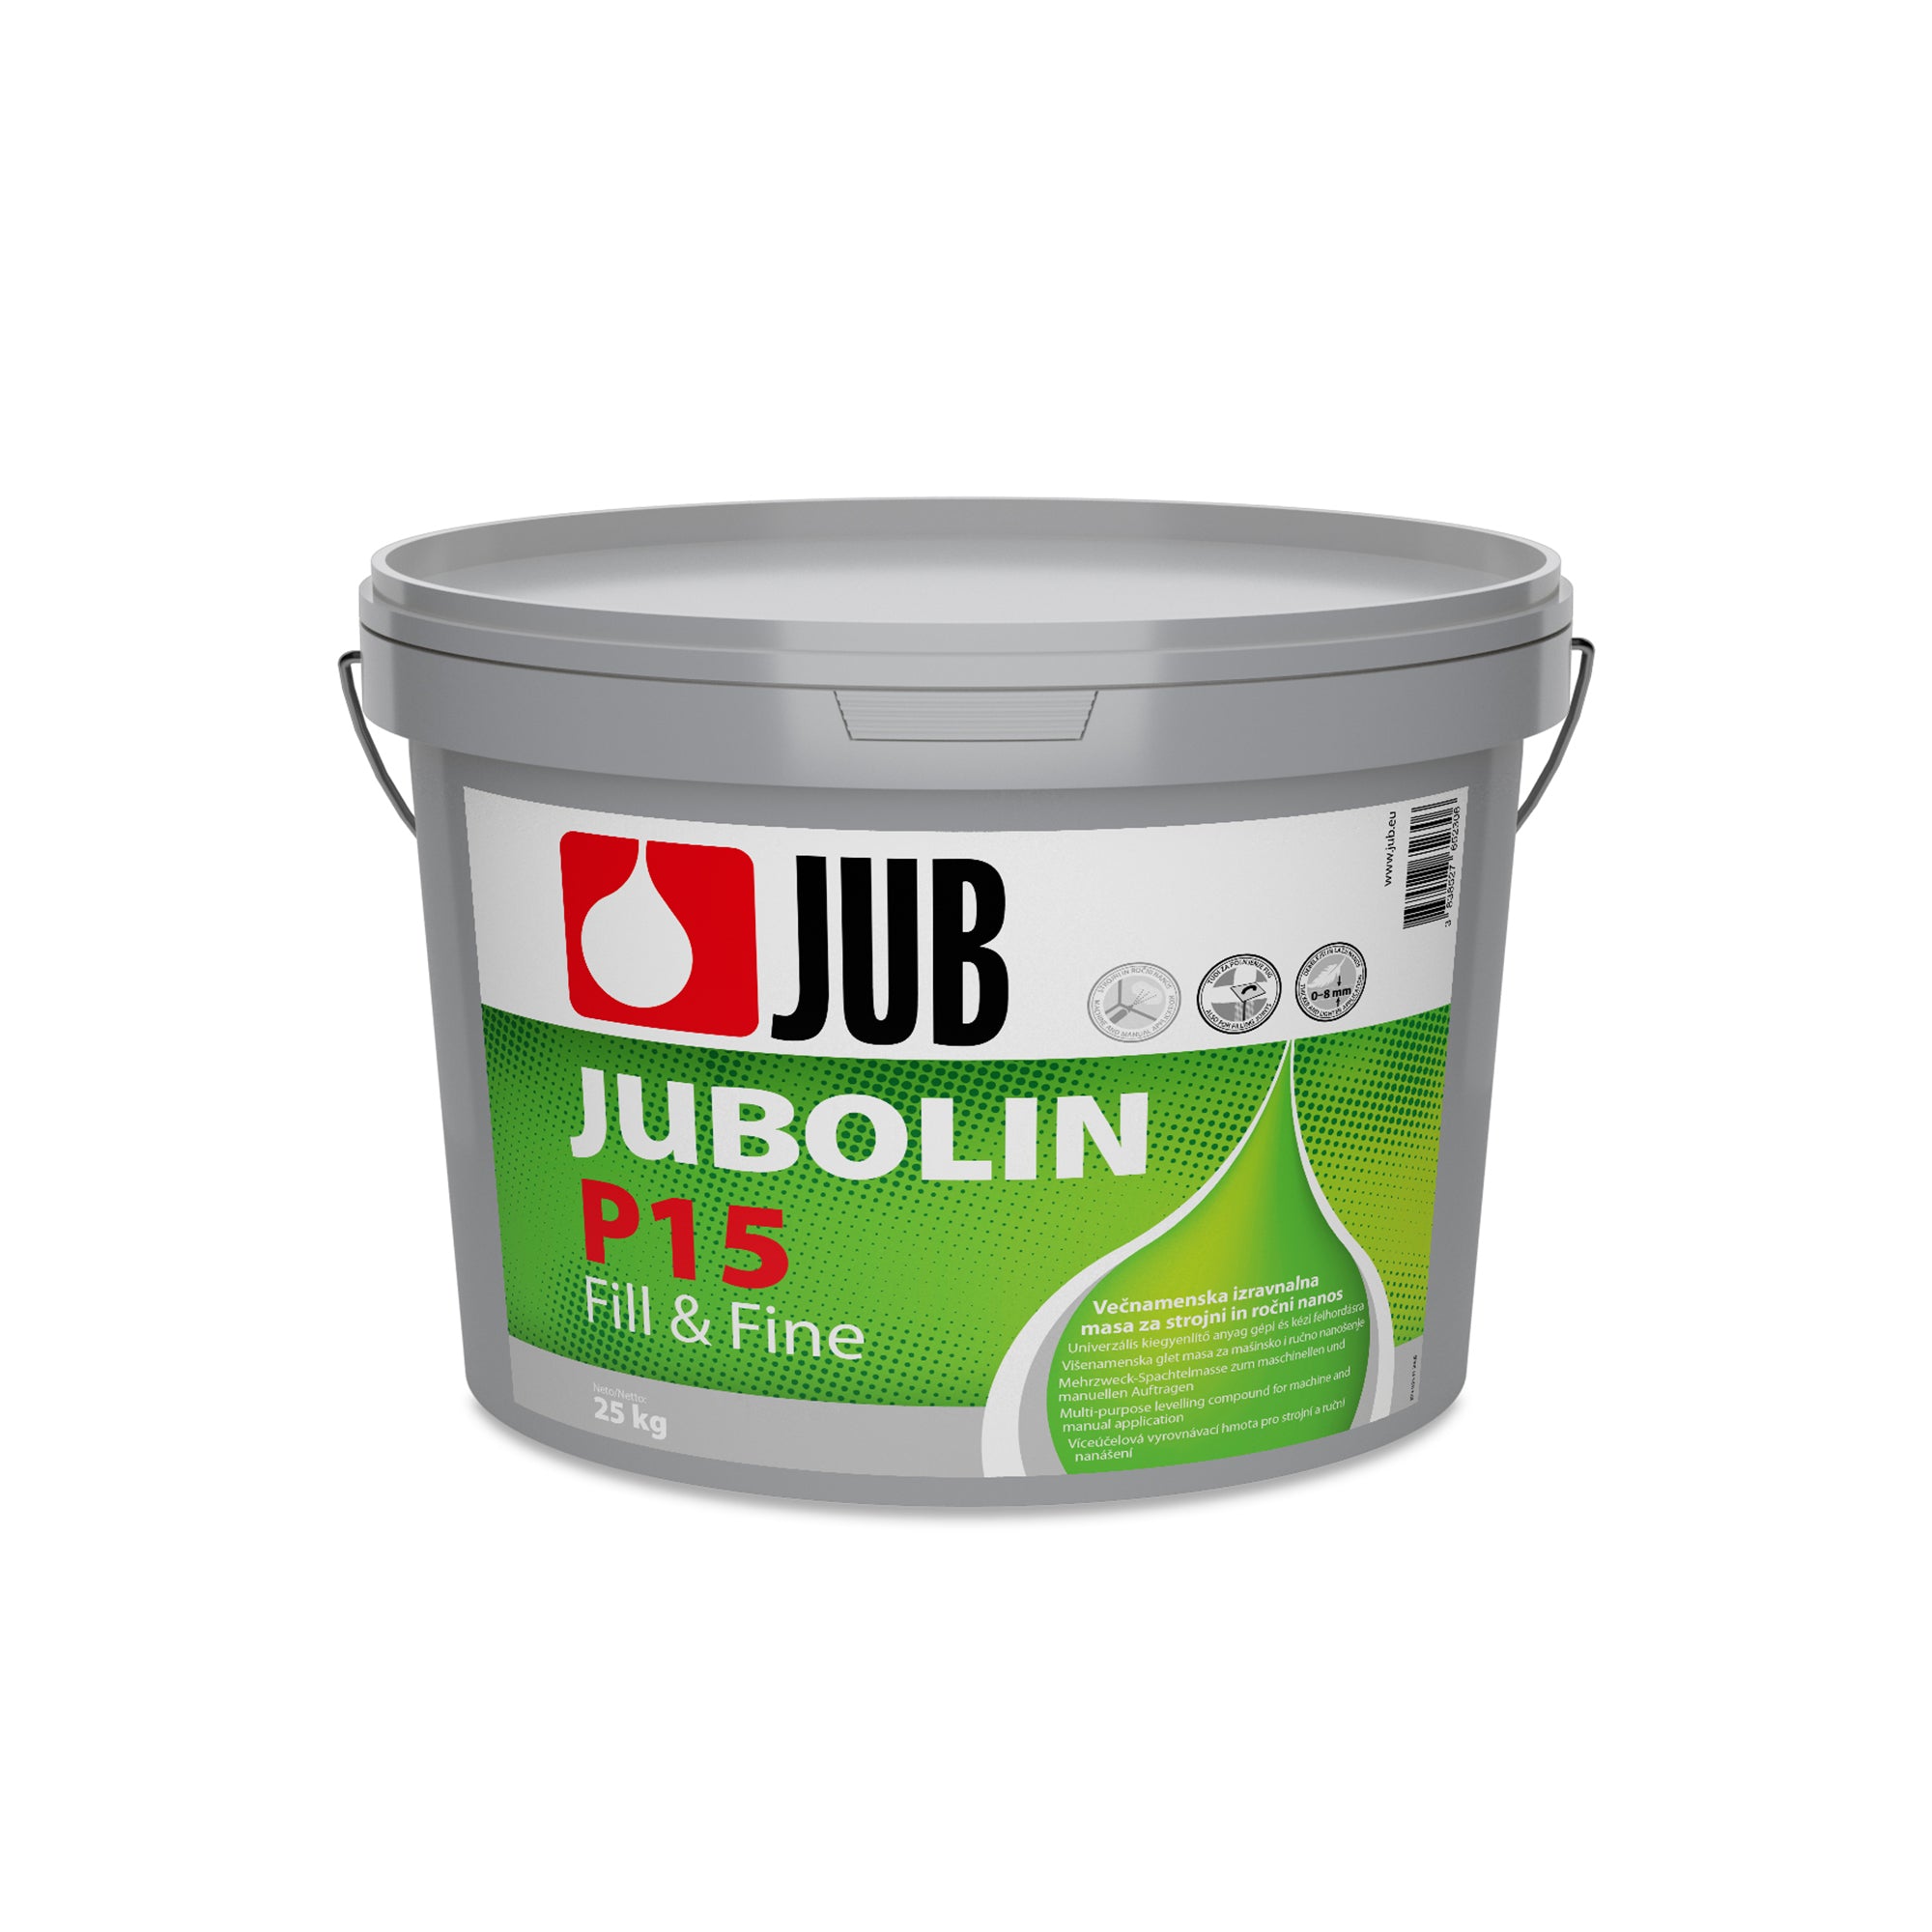 JUB JUBOLIN P15 Fill & Fine disperzní silnovrstvý víceúčelový tmel 25 kg